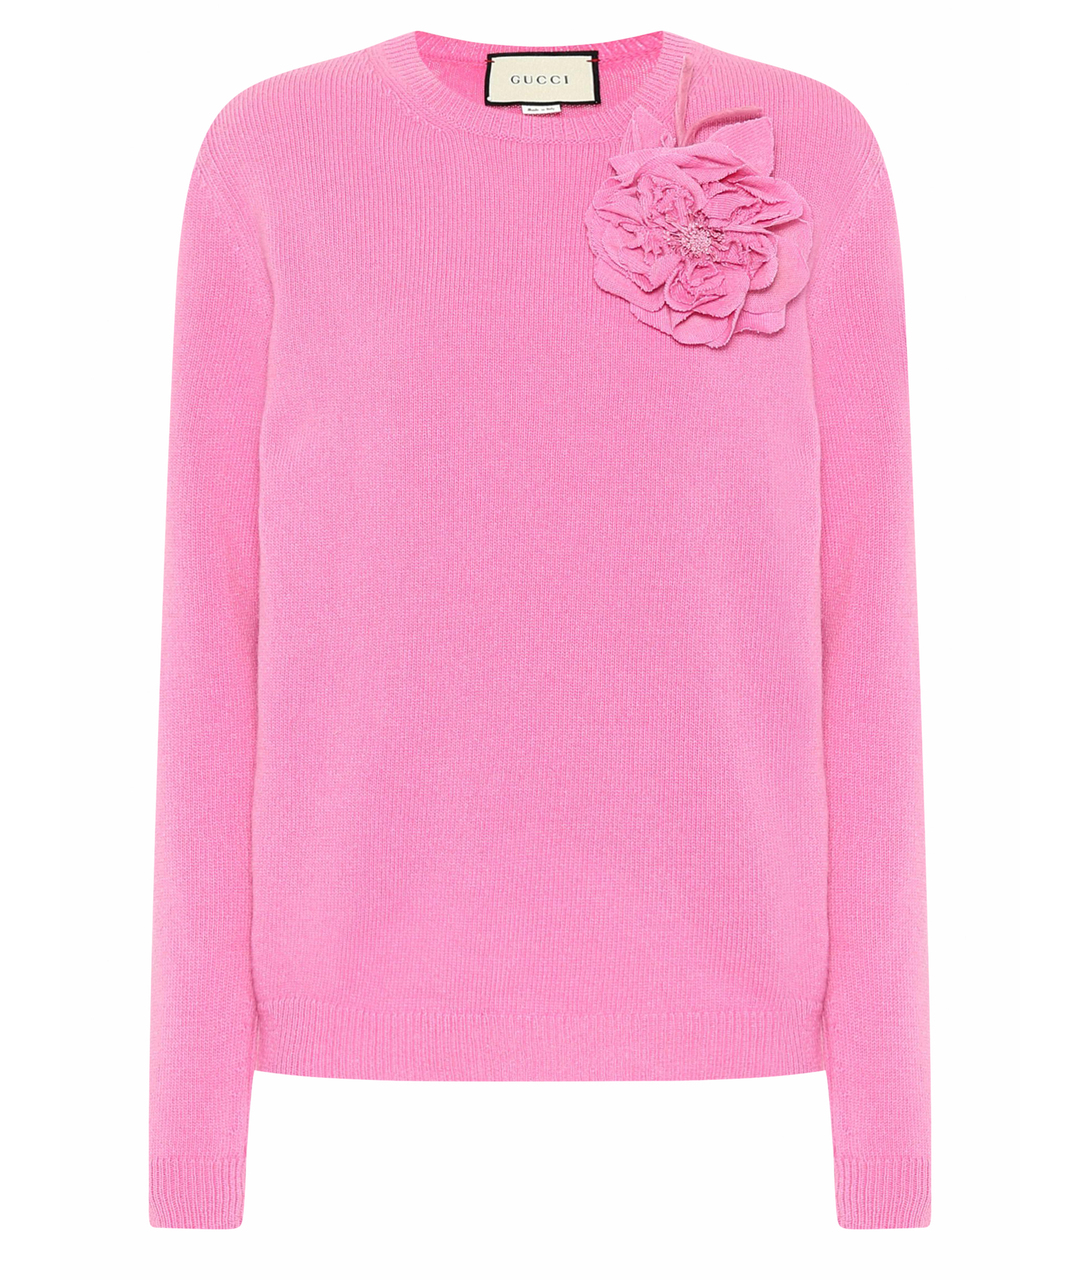 GUCCI Розовый кашемировый джемпер / свитер, фото 1